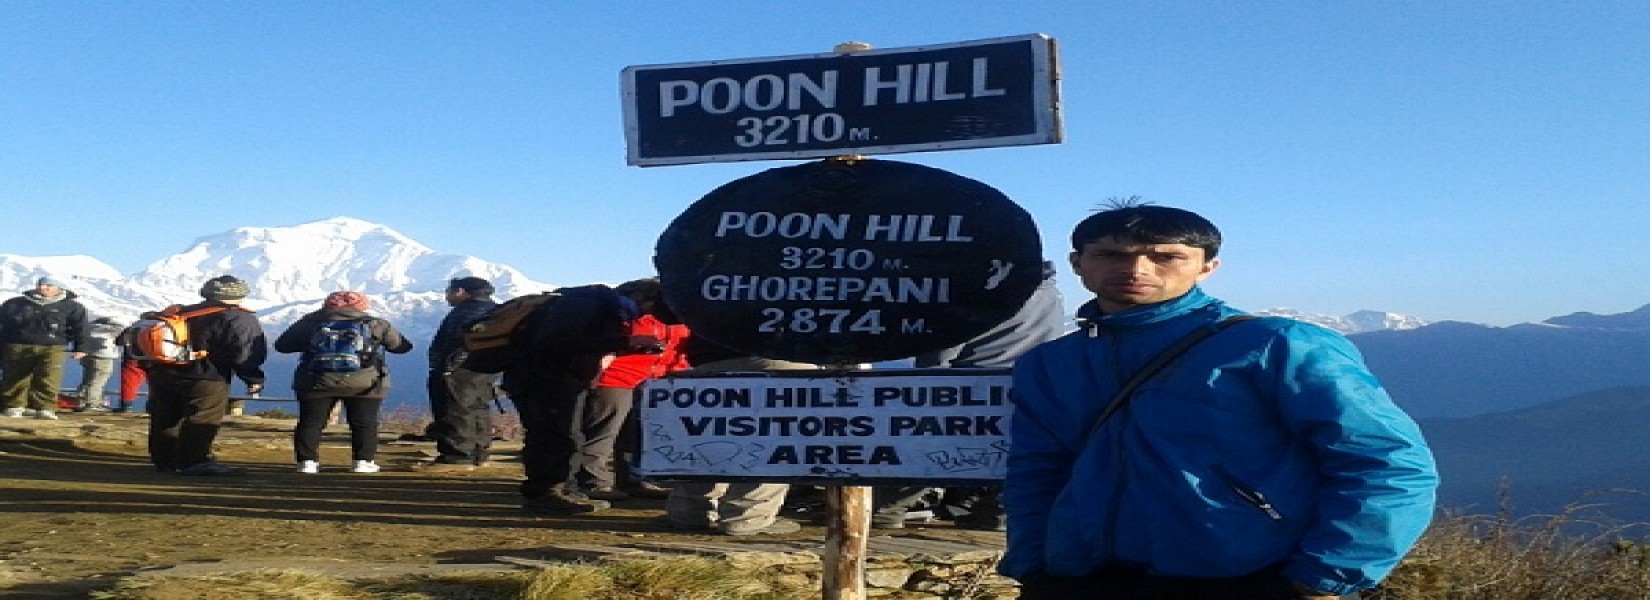 Poon Hill Trek- 6 Days